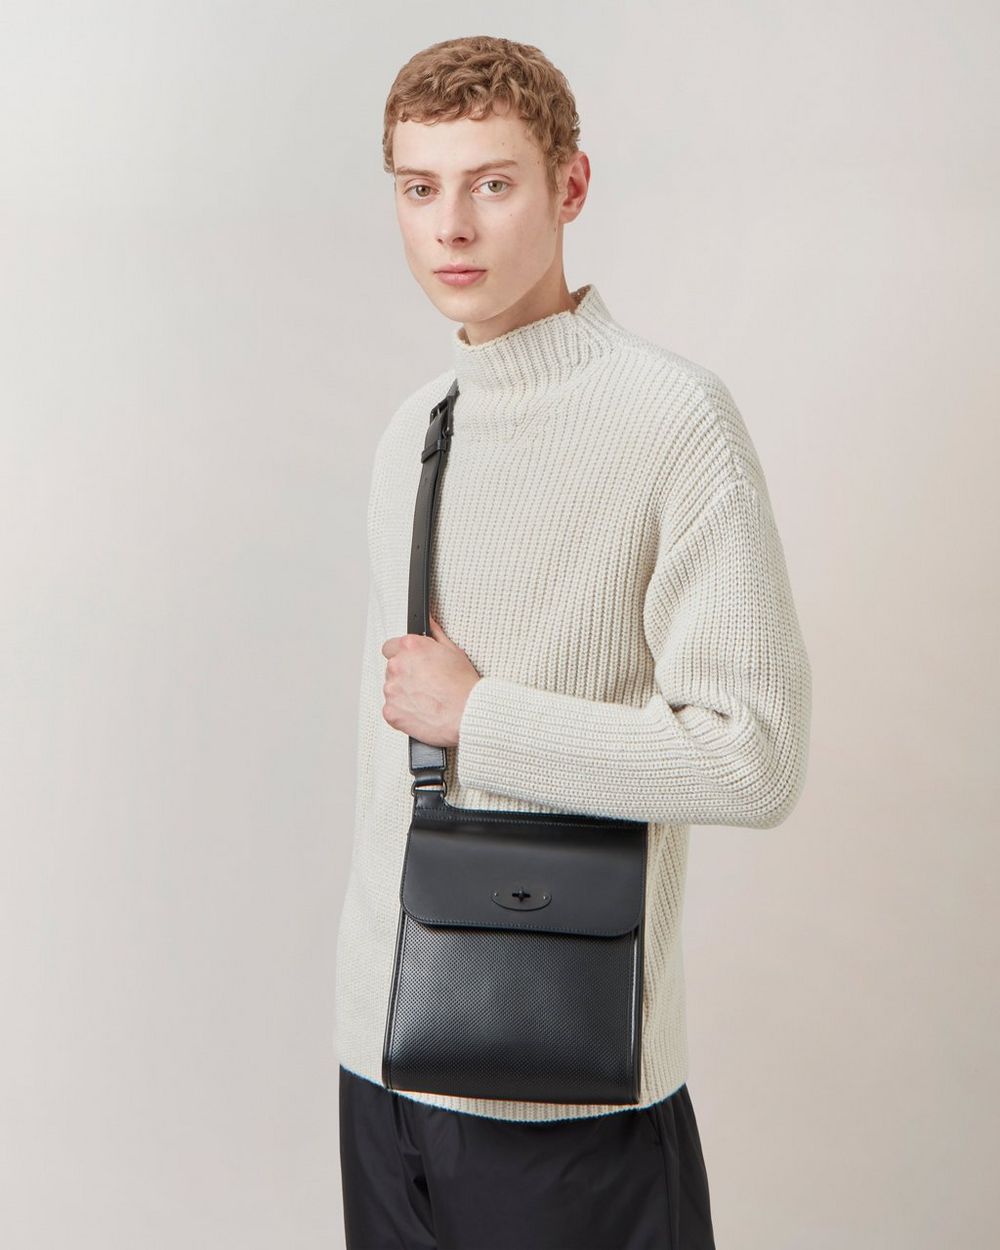 Antony Full-Grain Leather Messenger Bag